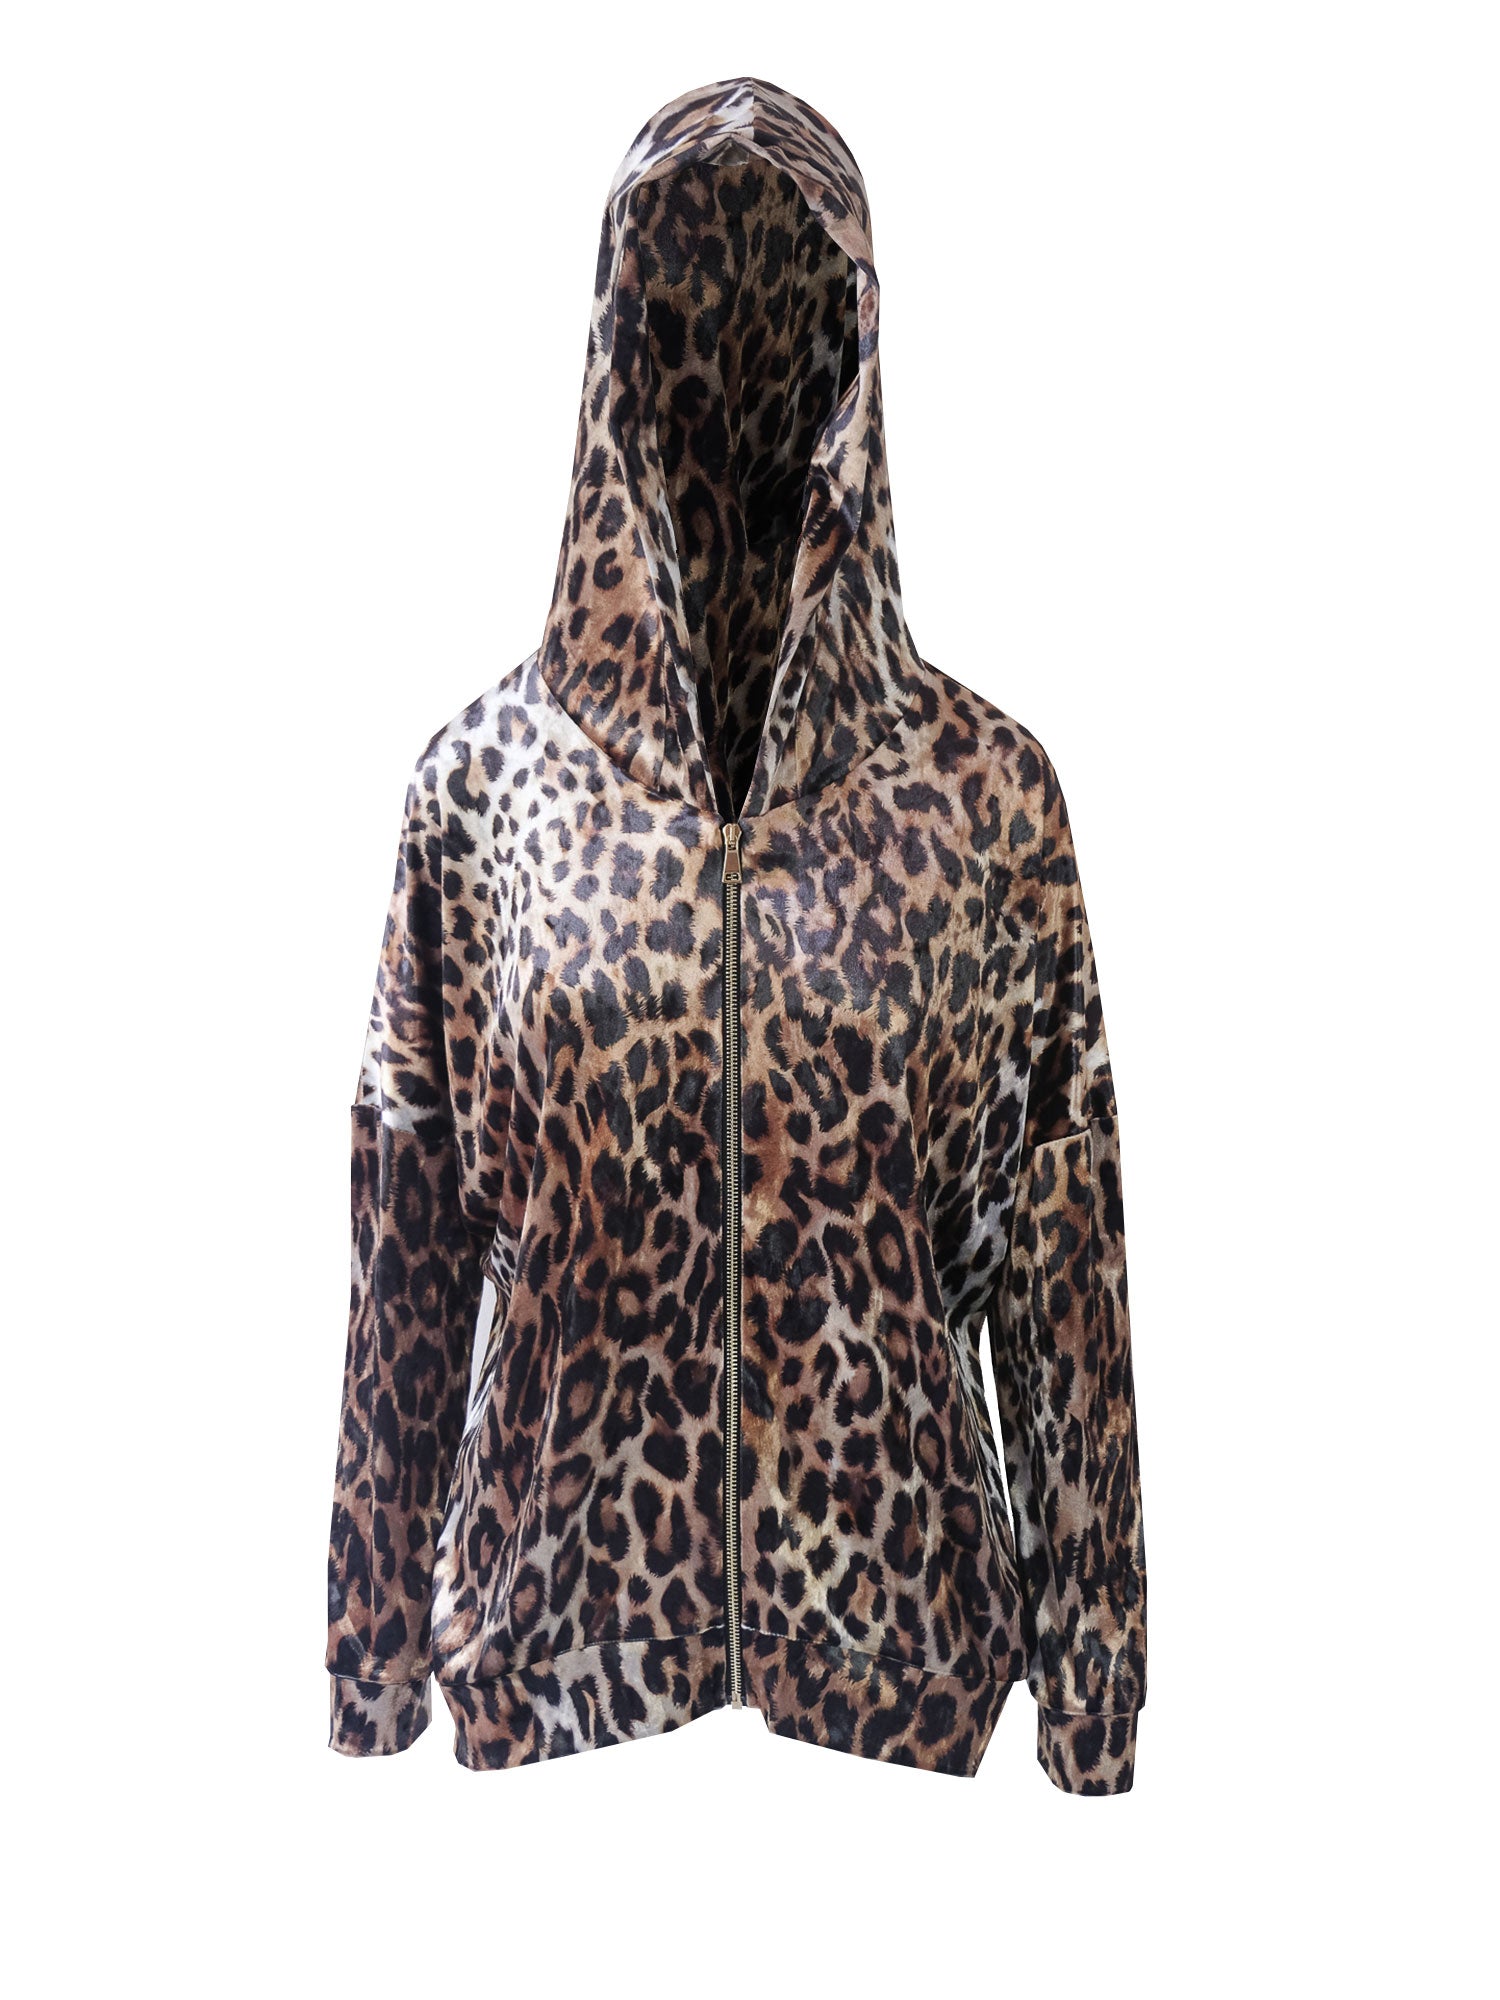 ADRIEN - animal print crushed velvet hoodie